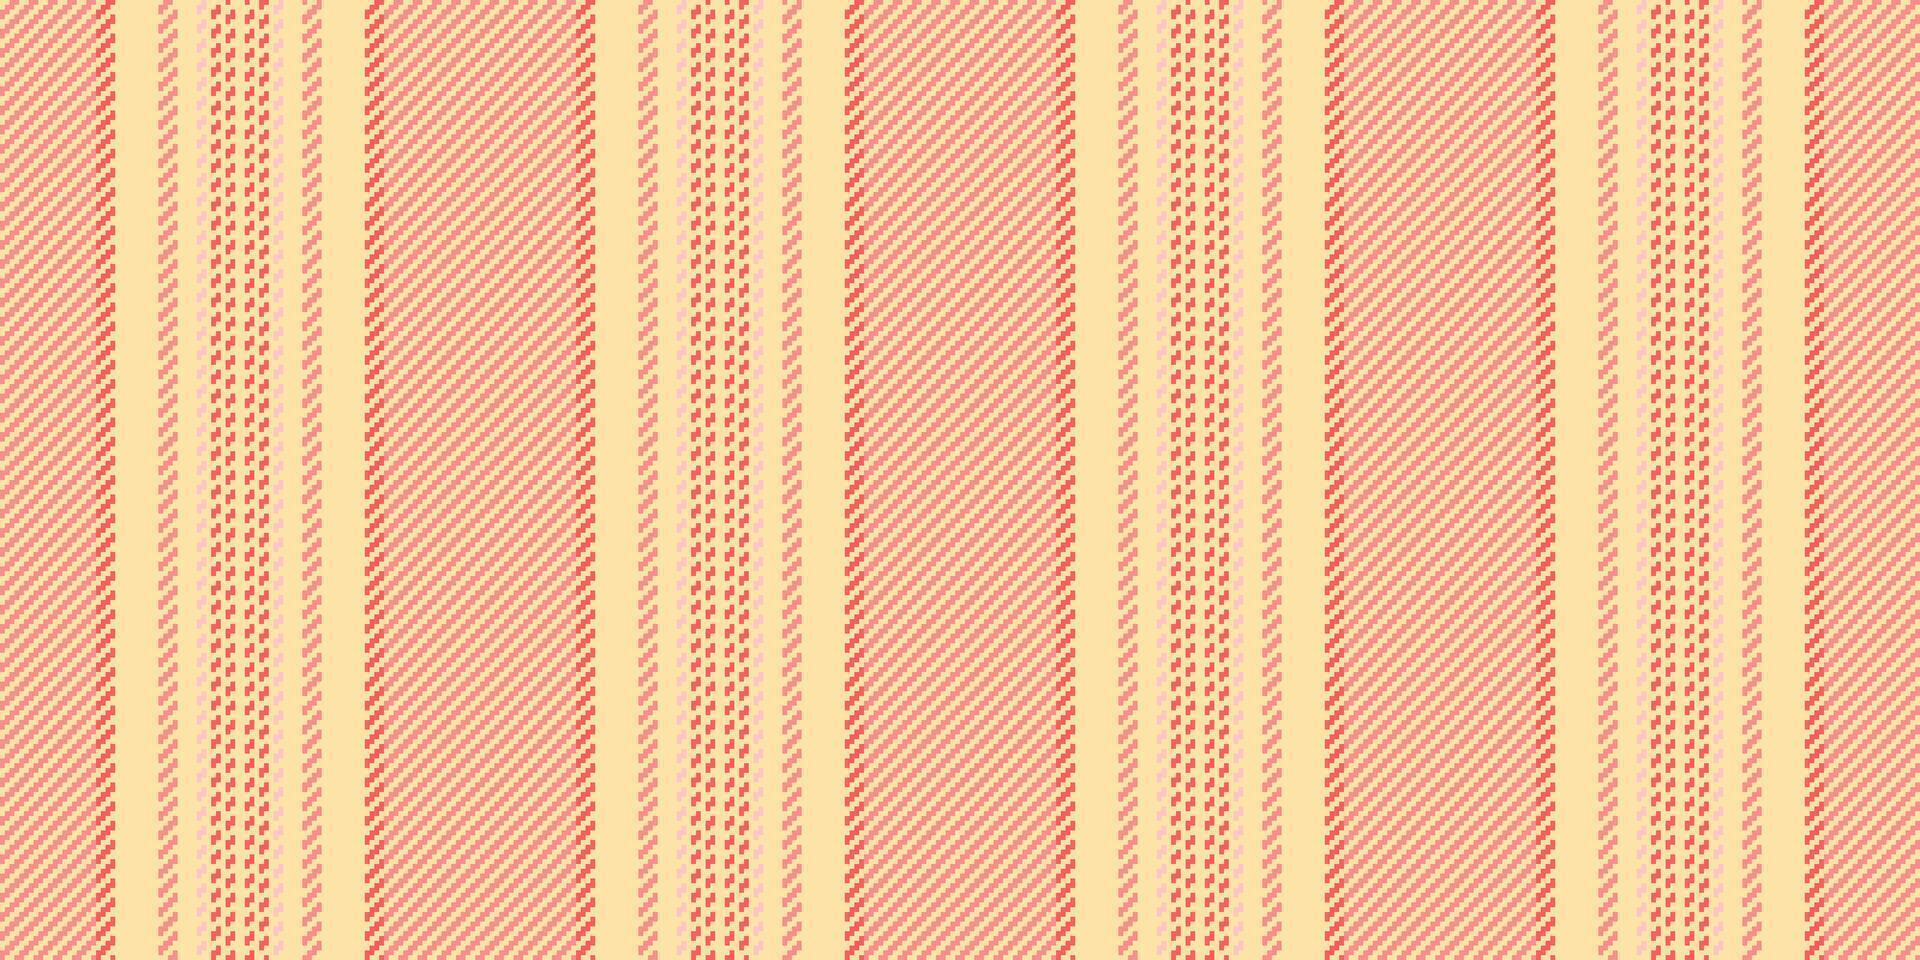 anos sessenta desatado vertical linhas, fluindo textura fundo padronizar. variação listra tecido vetor têxtil dentro navajo branco e tulipa cores.